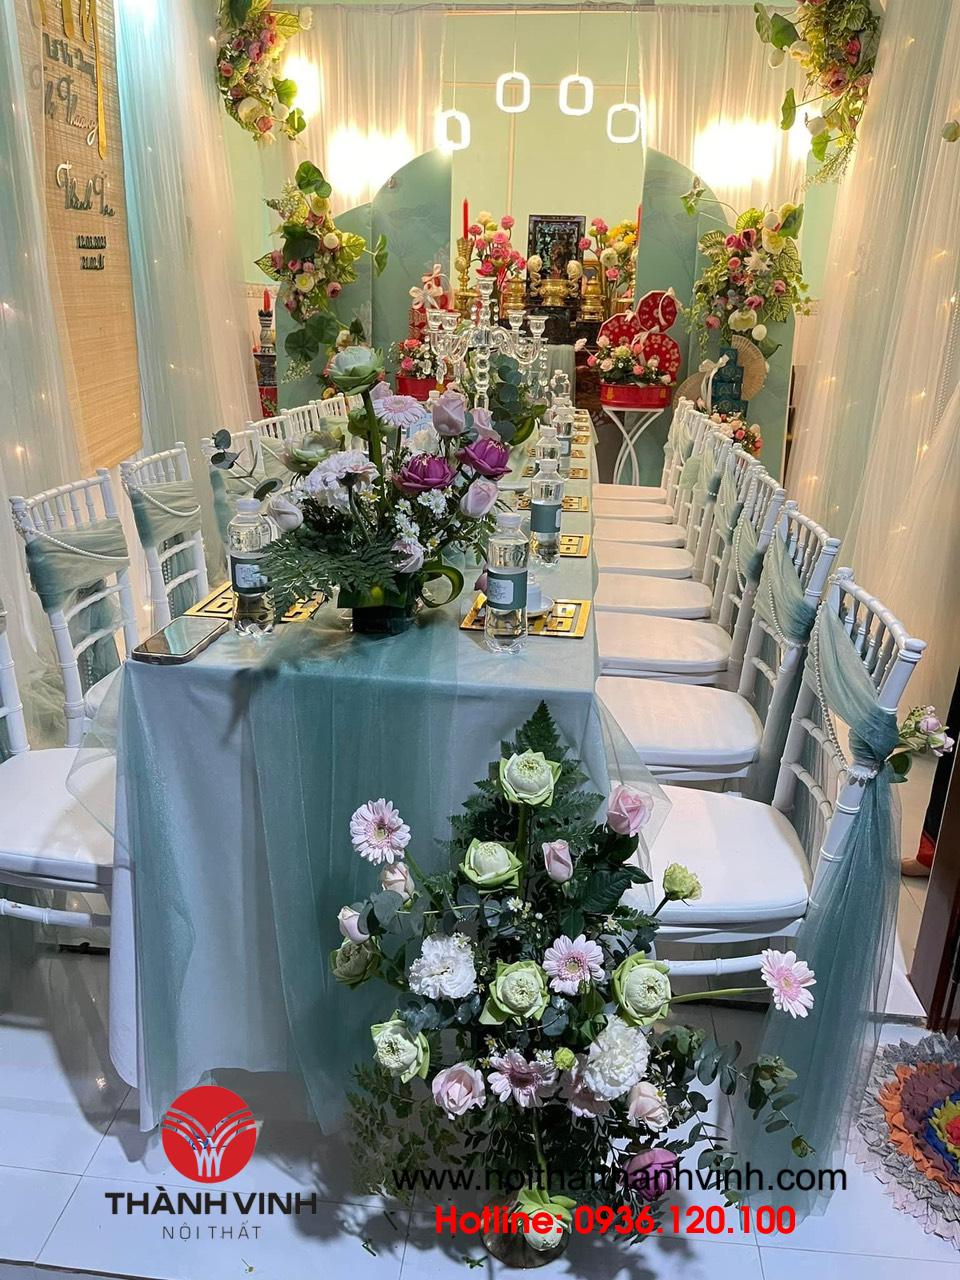 Hình ảnh tuyệt đẹp tại đám cưới ở Phú Thọ